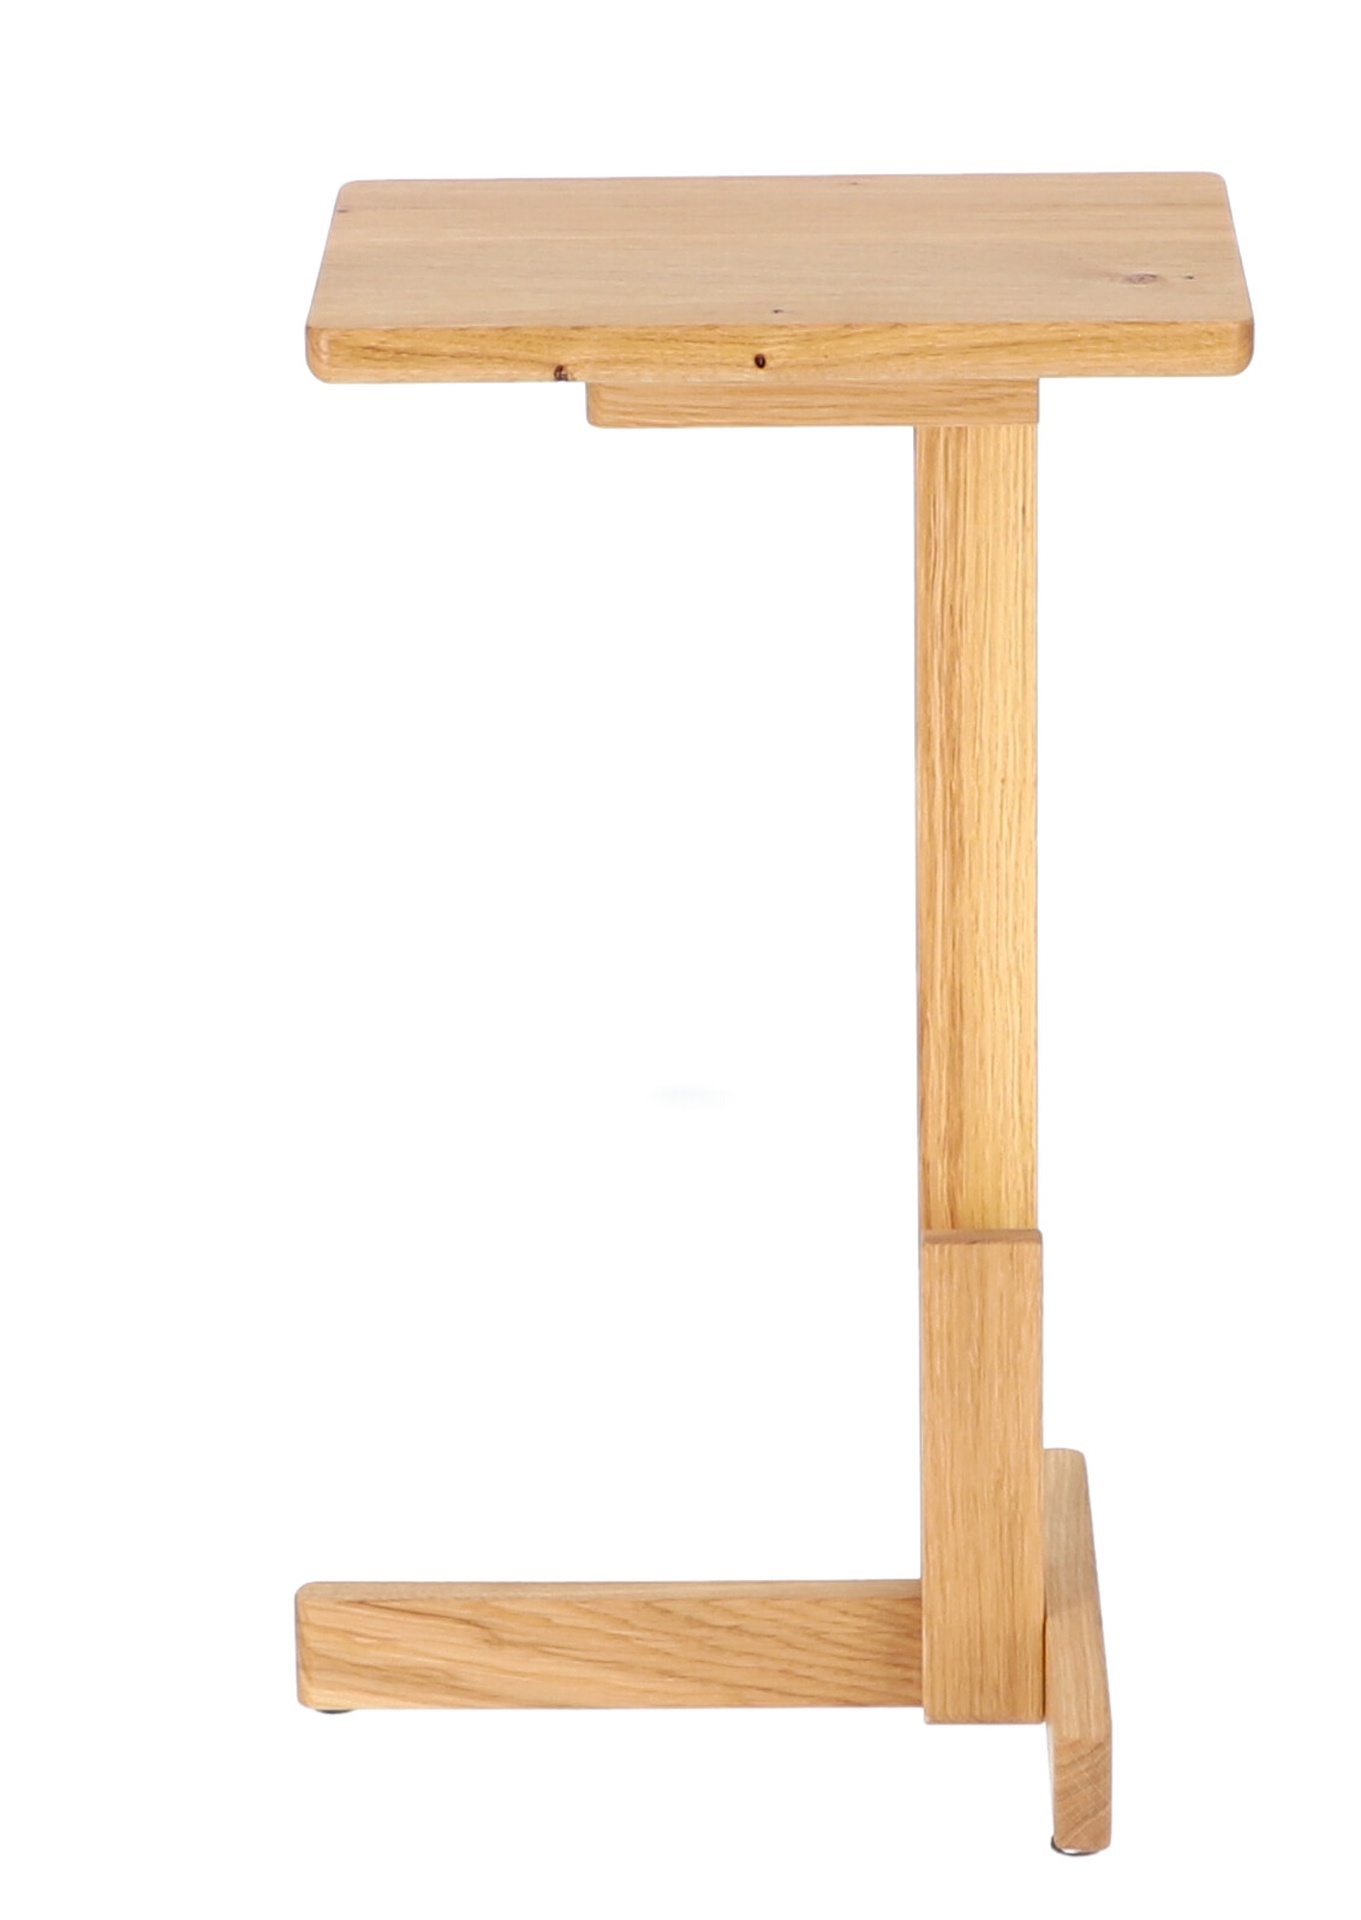 Der schlichte Beistelltisch Laurel wurde aus Eichenholz gefertigt. Besonders auffällig ist seine besondere Form. Der Tisch ist ein Produkt der Marke Jan Kurtz.